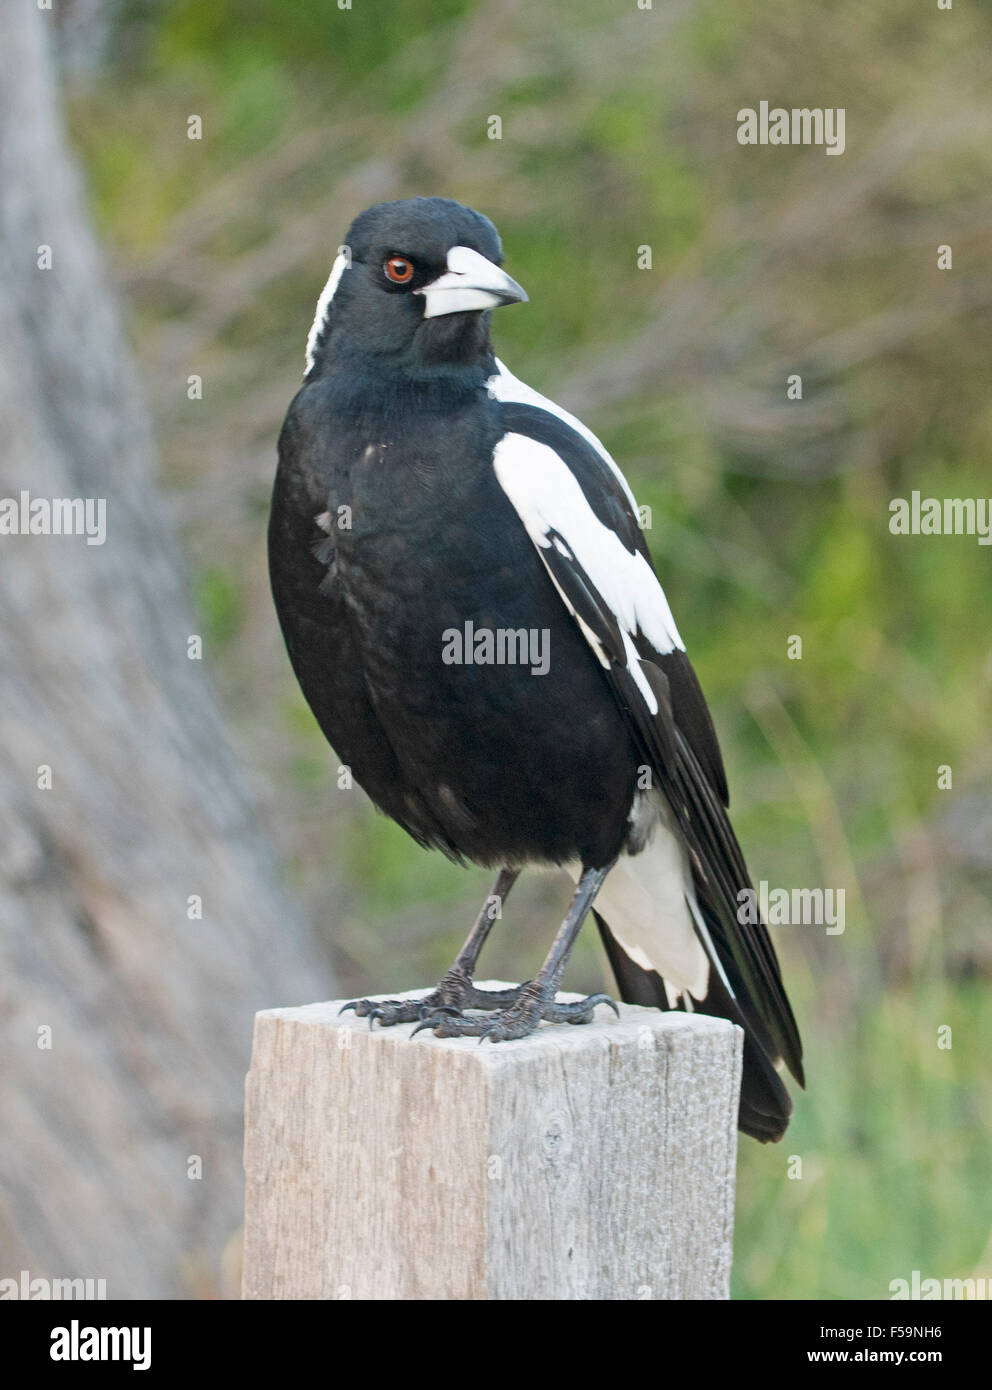 Cassican flûteur, oiseau noir et blanc, oeil étincelant, debout sur poster dans jardin de banlieue contre fond vert Banque D'Images